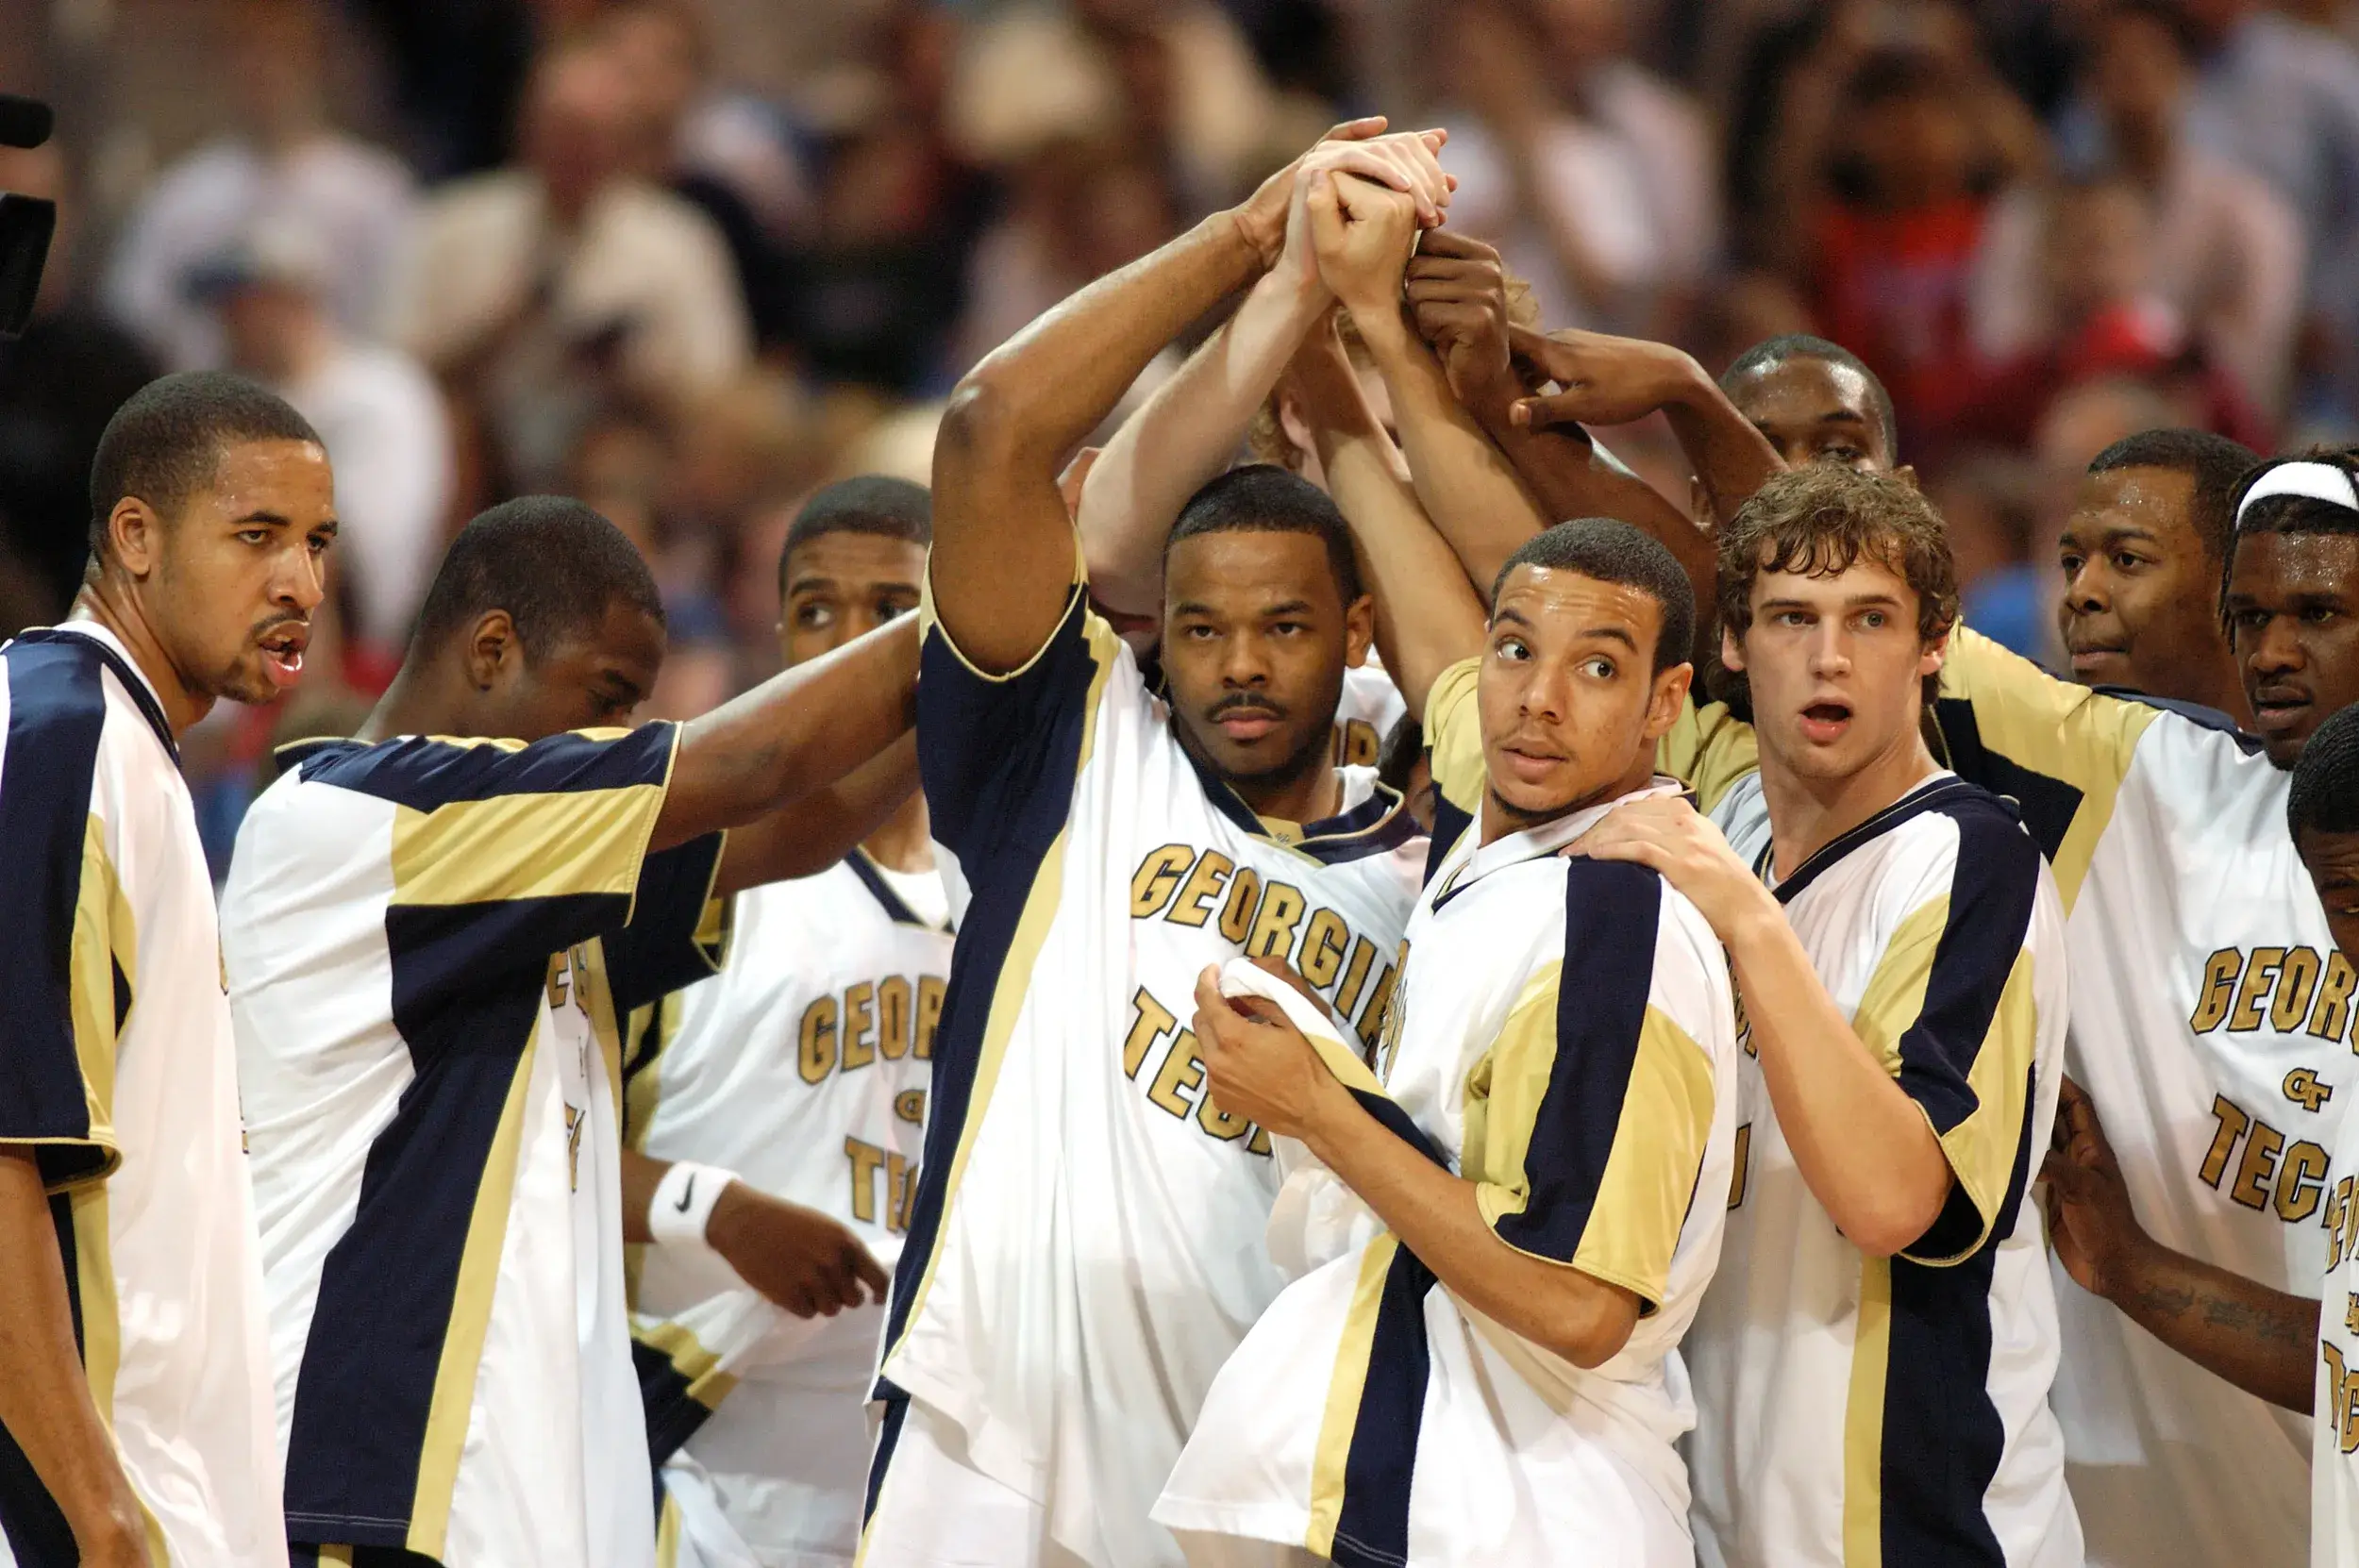 2004: Georgia Tech’s men’s basketball